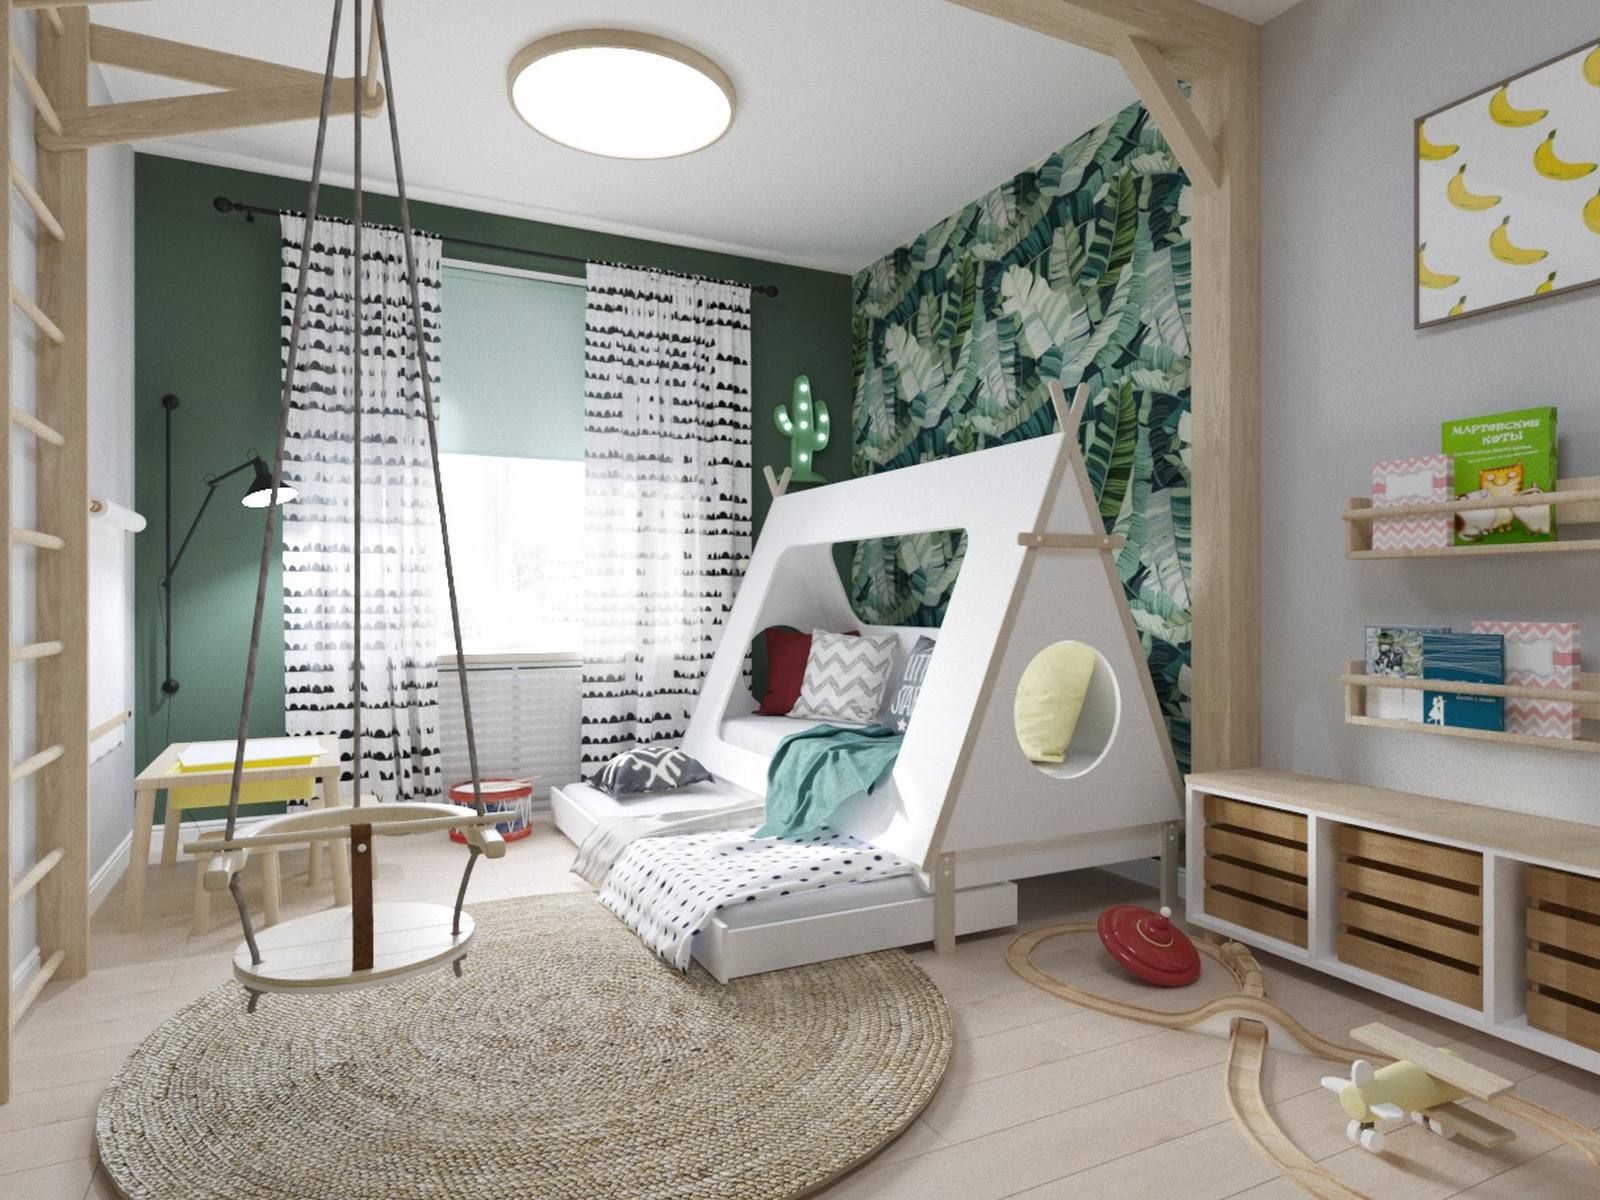 Căn phòng riêng của bé trai được thiết kế cực kỳ dễ thương và sống động với giấy dán tường họa tiết lá chuối nổi bật, sơn tường màu xám kết hợp xanh lá tạo nên sự trẻ trung phù hợp với độ tuổi của bé.